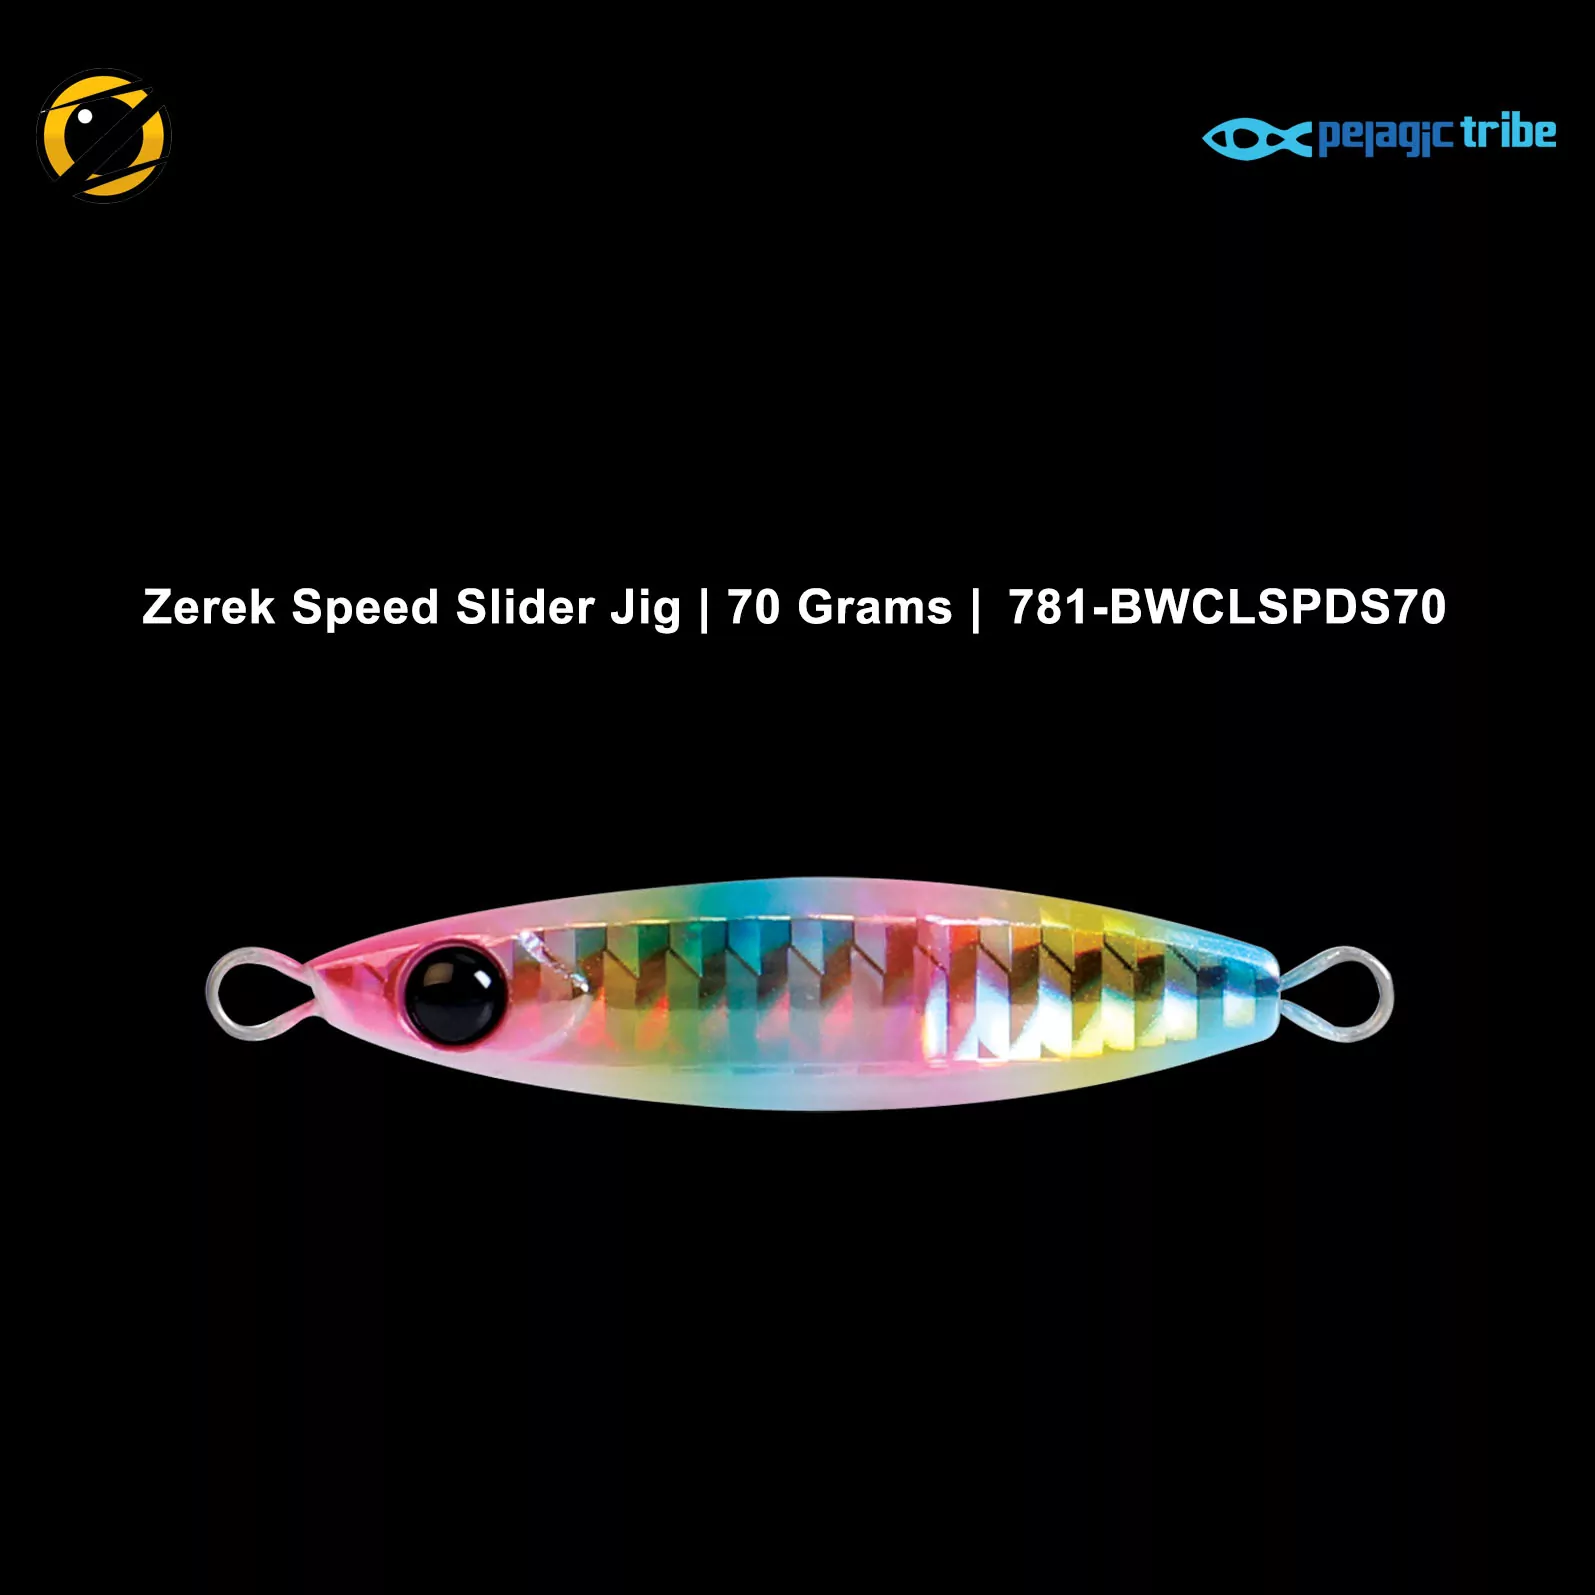 Zerek Speed Slider Jigs